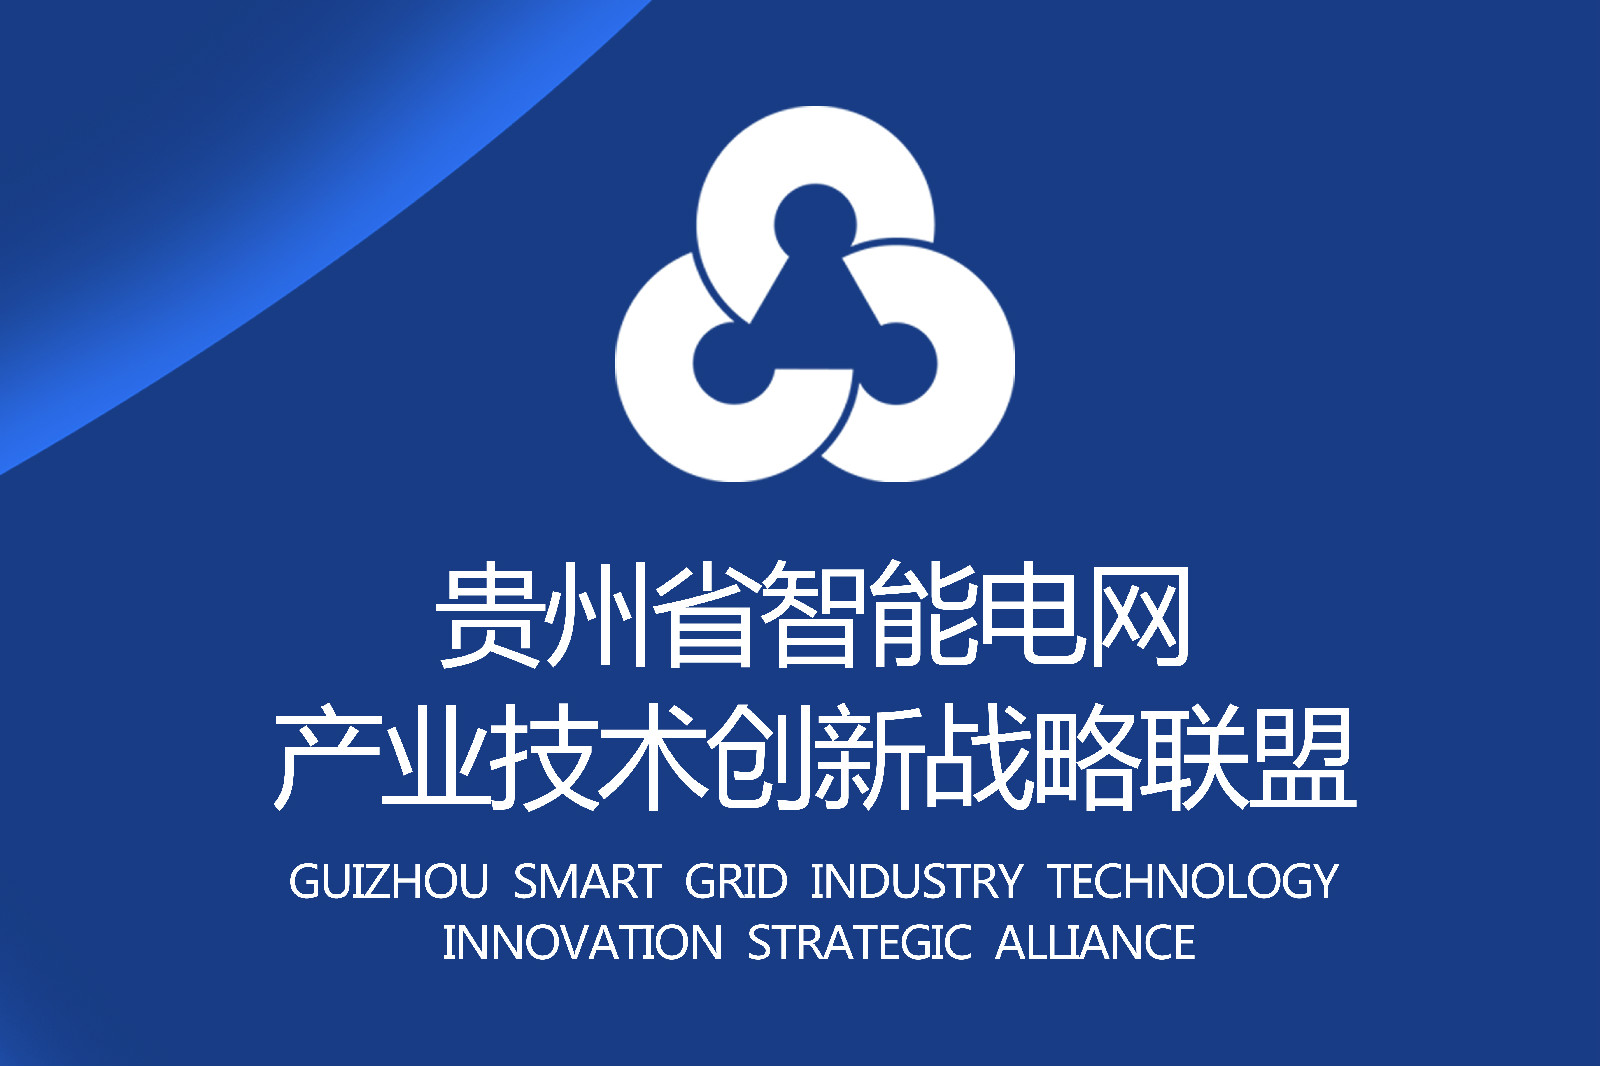 貴州省智慧型電網產業技術創新戰略聯盟